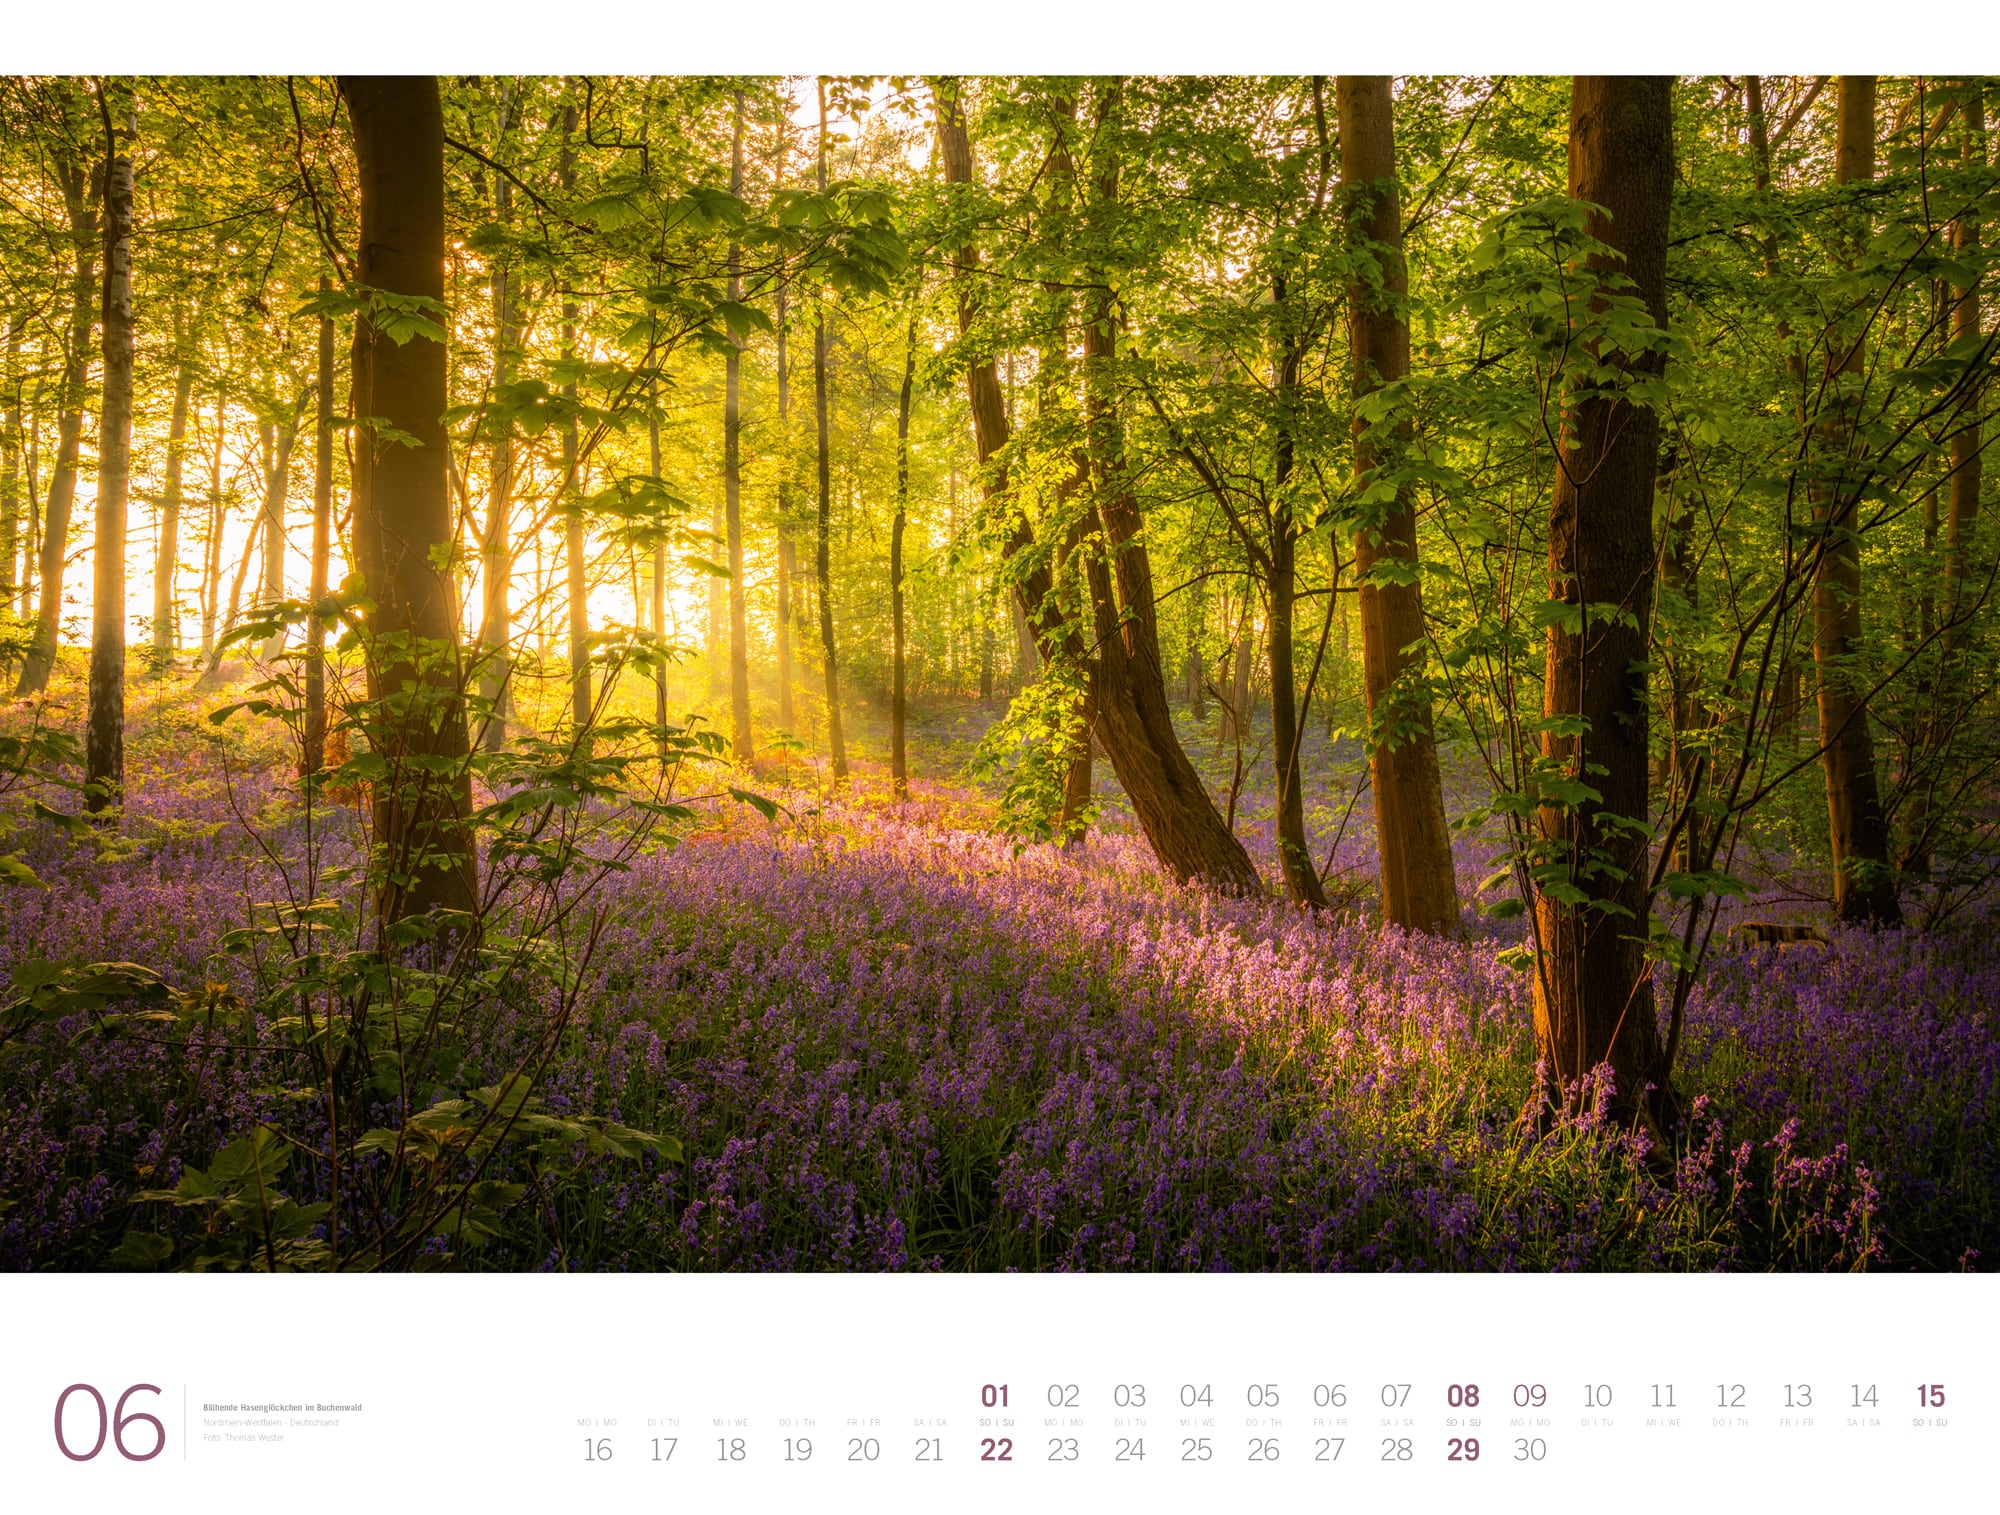 Ackermann Calendar Forest - Gallery 2025 - Inside View 06